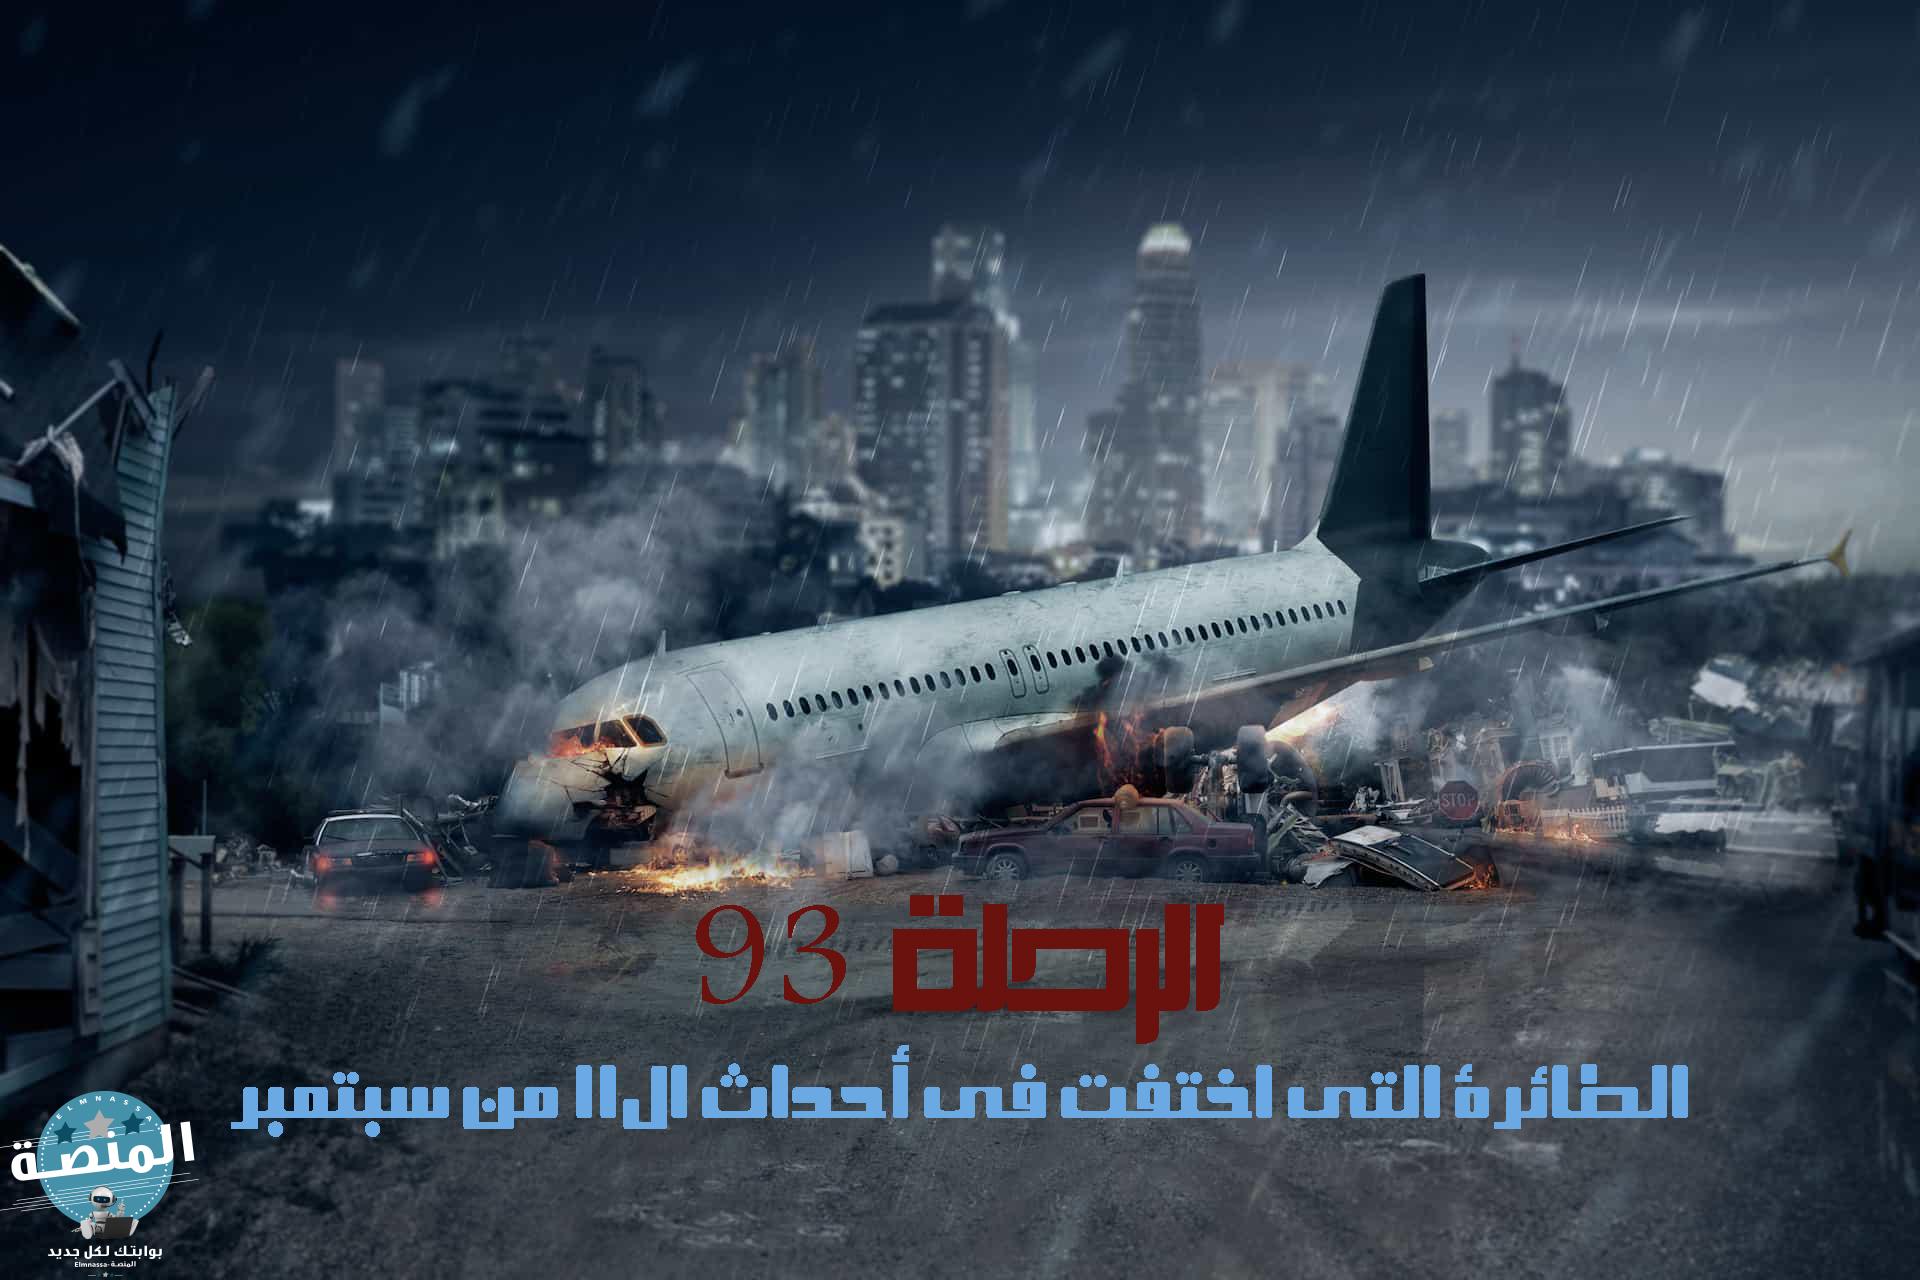 الرحلة 93 الطائرة التي اختفت في أحداث ال11 من سبتمبر